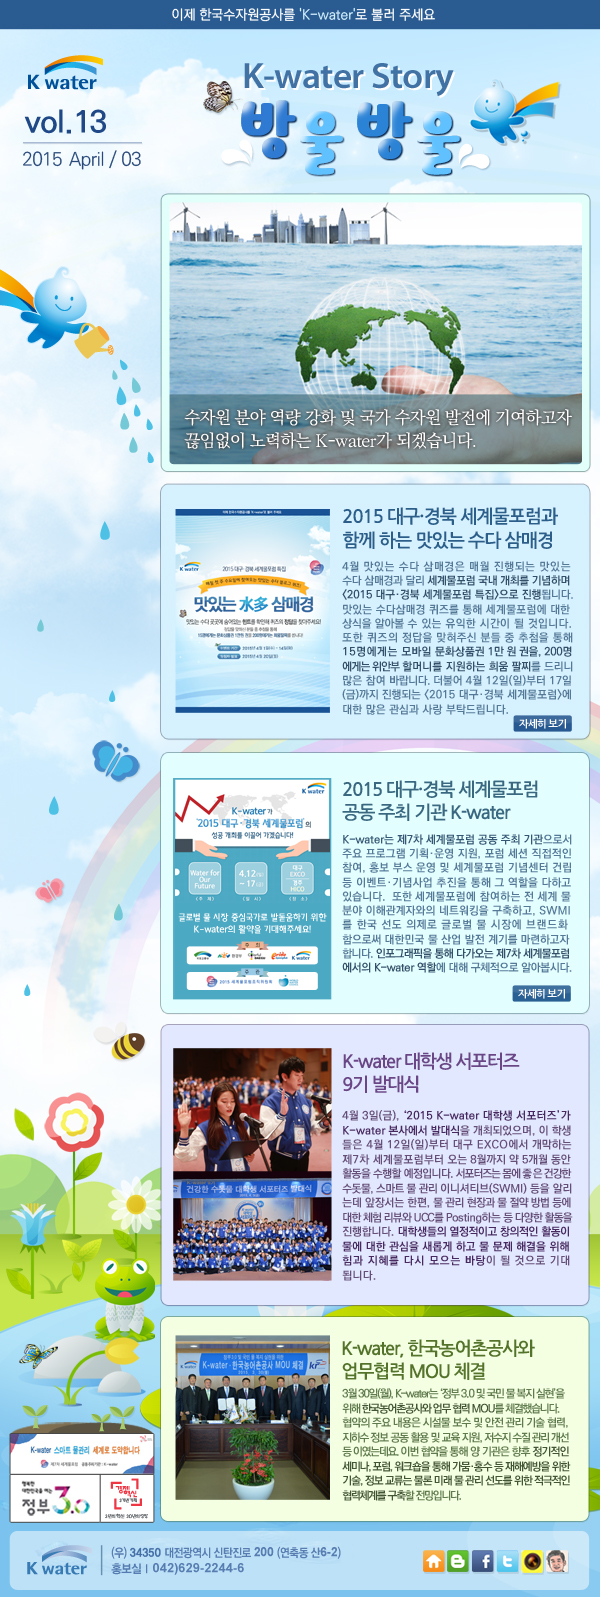 K-water 뉴스레터 2015년 13호